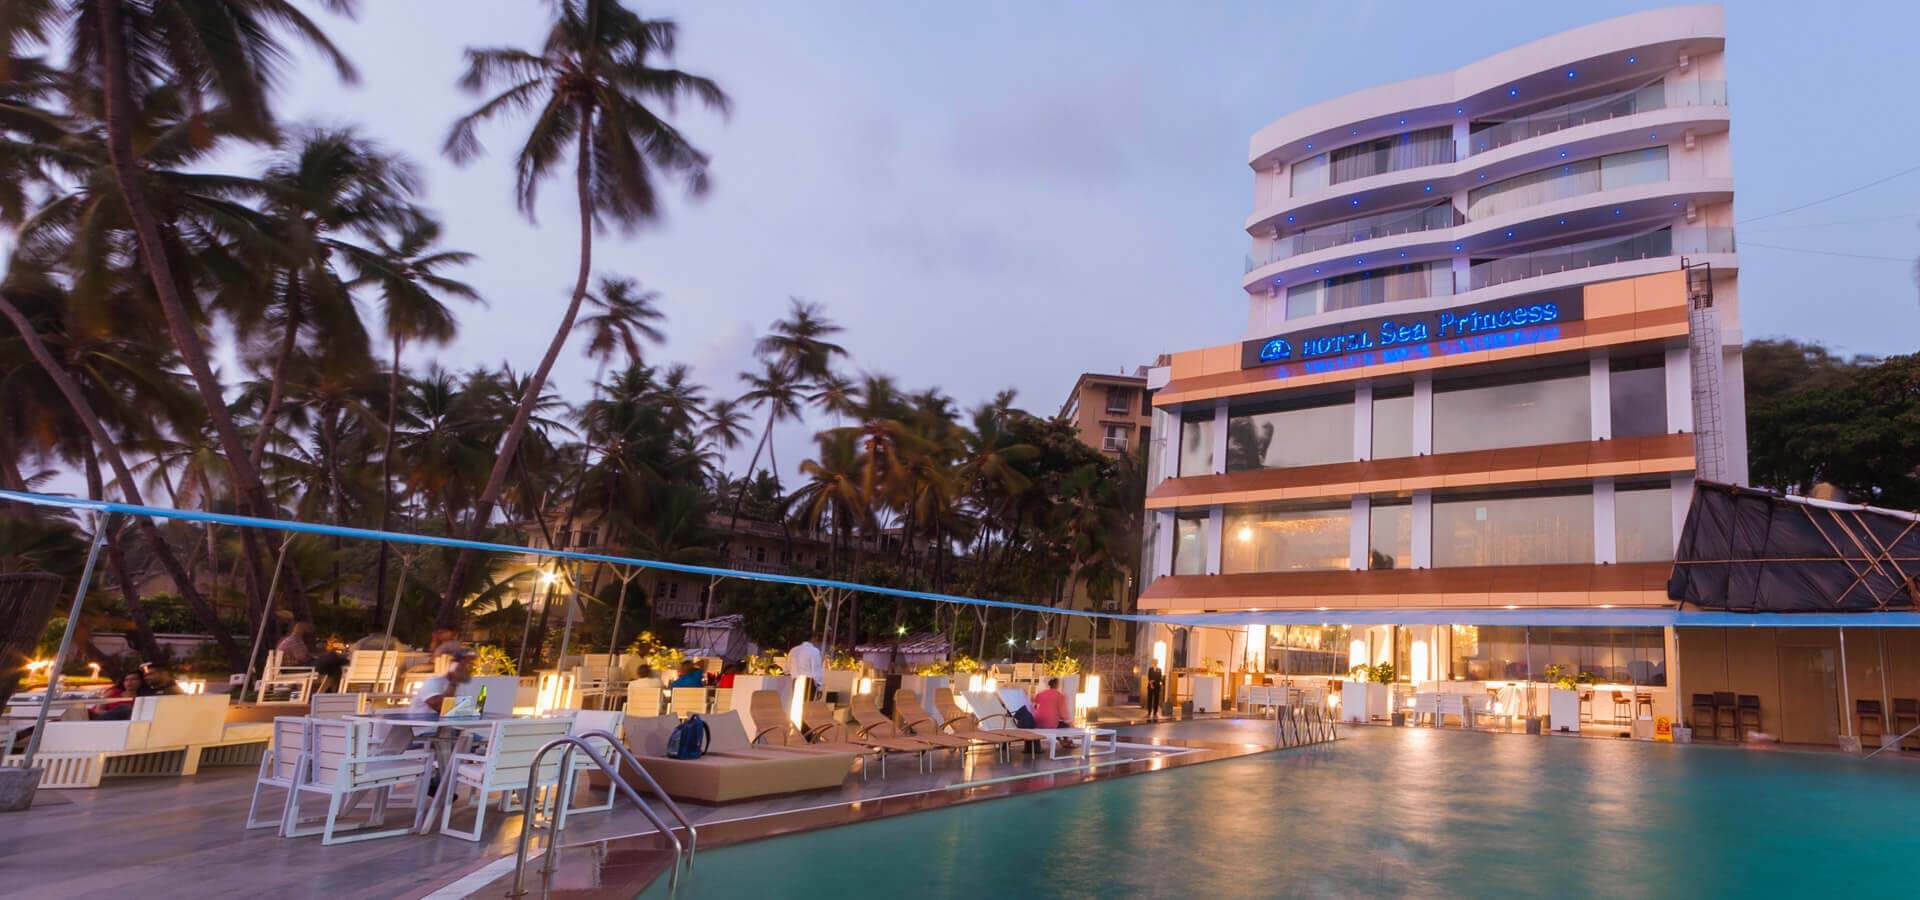 Hotels near Juhu beach Mumbai, 5 star hotels in Juhu, List of hotels in Juhu, sea facing hotels in Juhu, Juhu beach hotels, hotel with free wifi in Juhu, Sunday brunch Juhu